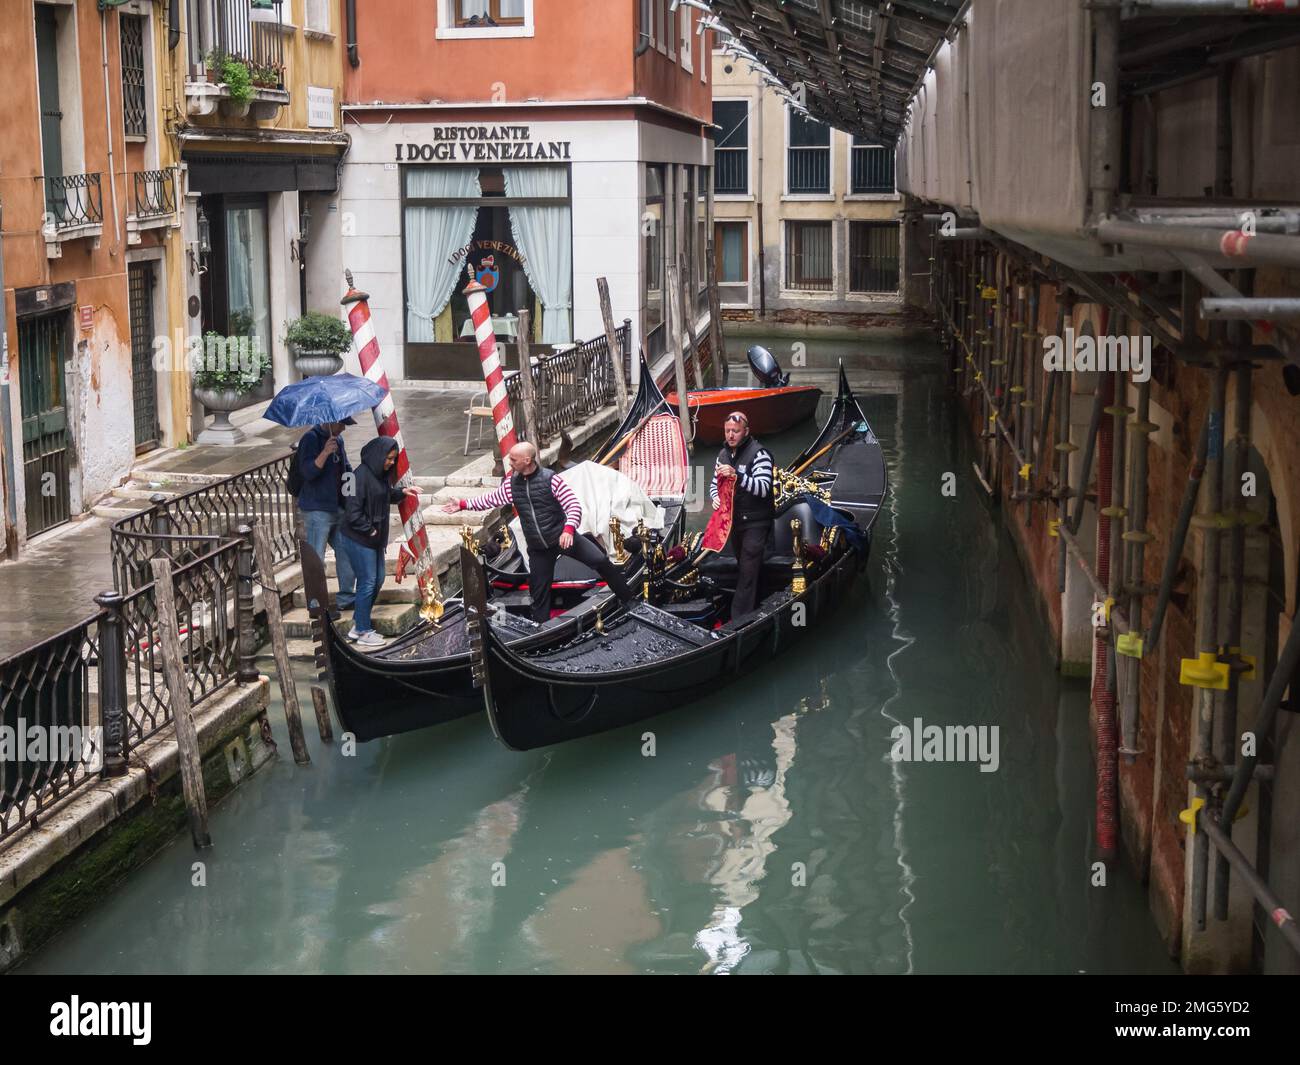 Gondola stop near Ristorante Ai Dogi Veneziani Venice Italy Stock Photo